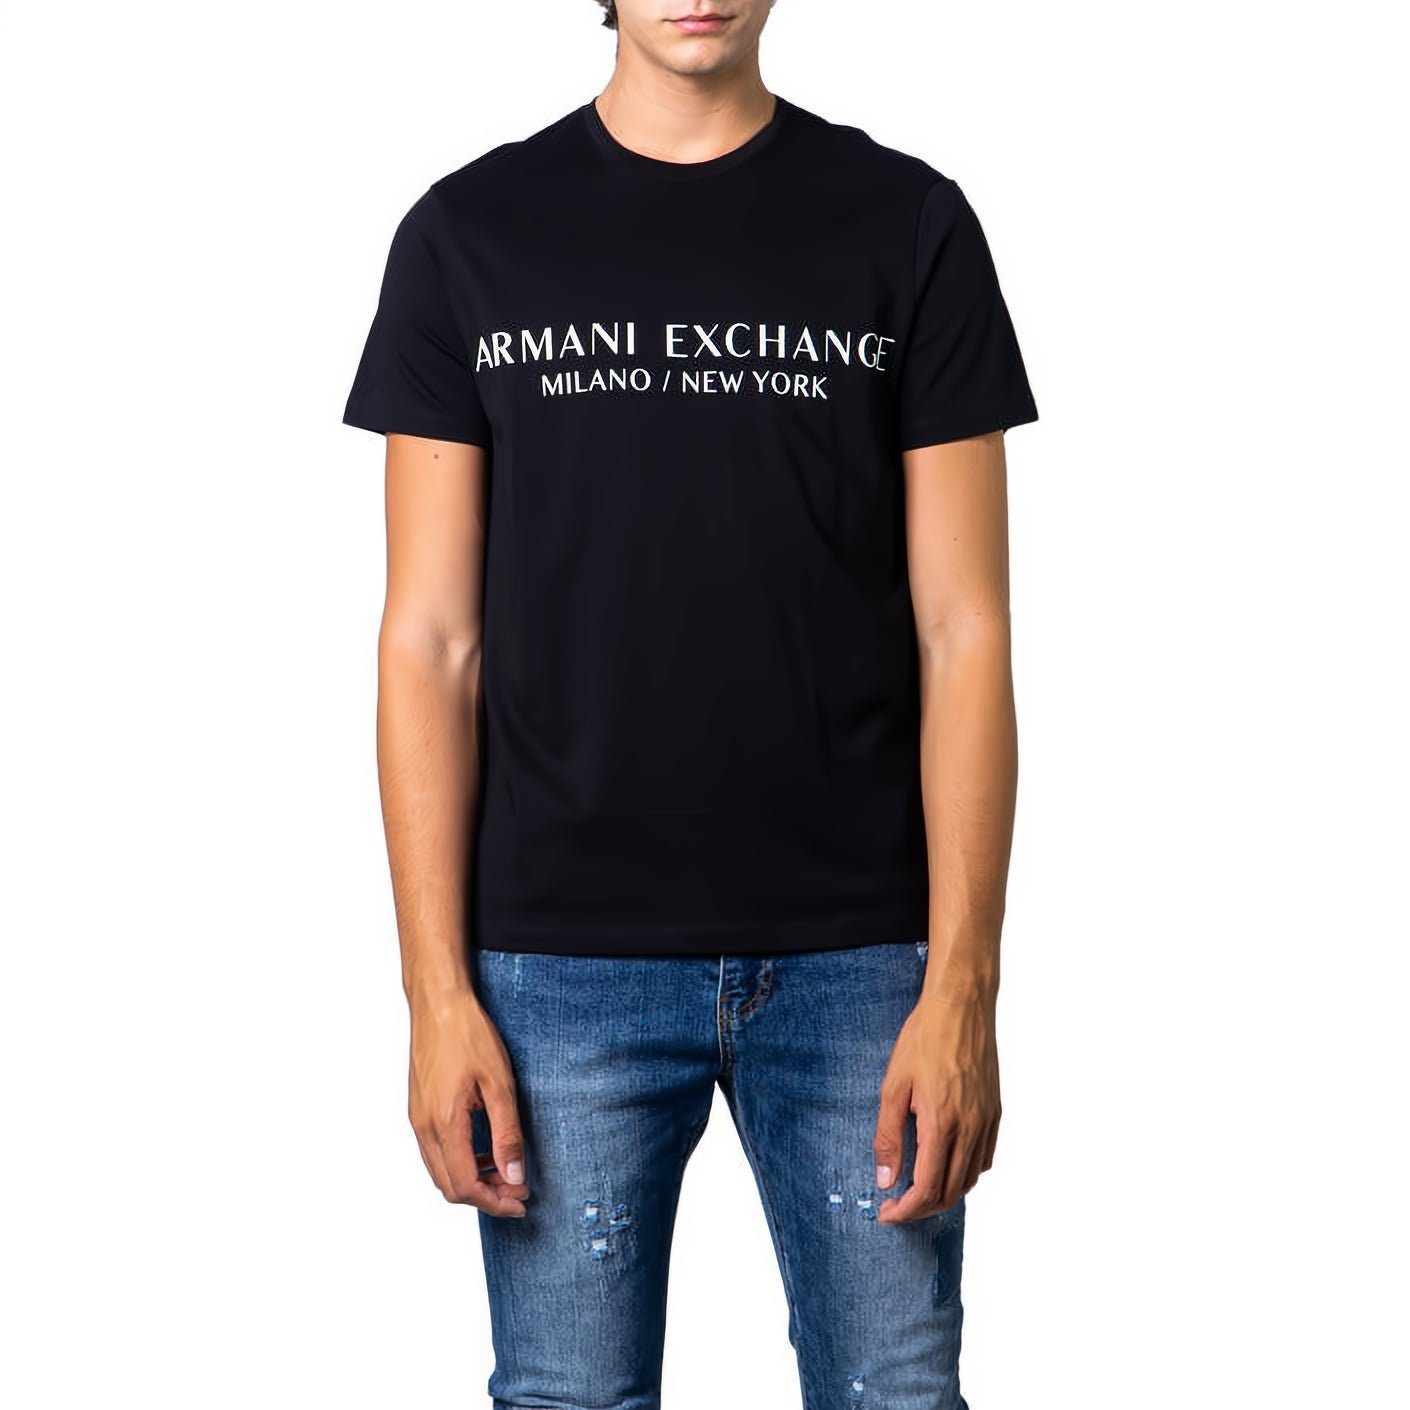 ARMANI EXCHANGE T-Shirt kurzarm, Rundhals, ein Must-Have für Ihre Kleidungskollektion! Schwarz